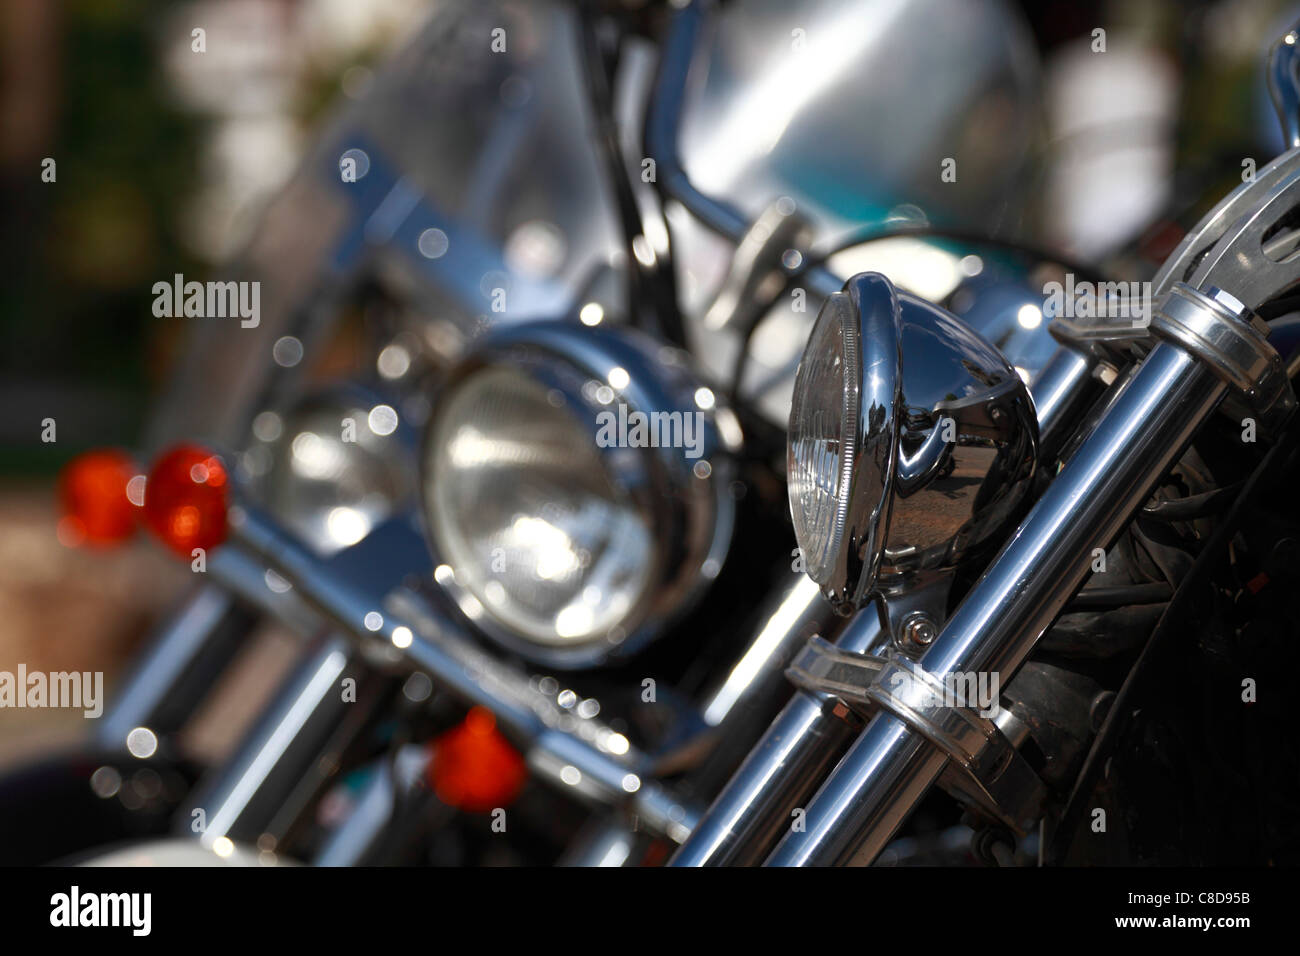 Custom bike, headlight detail Stock Photo